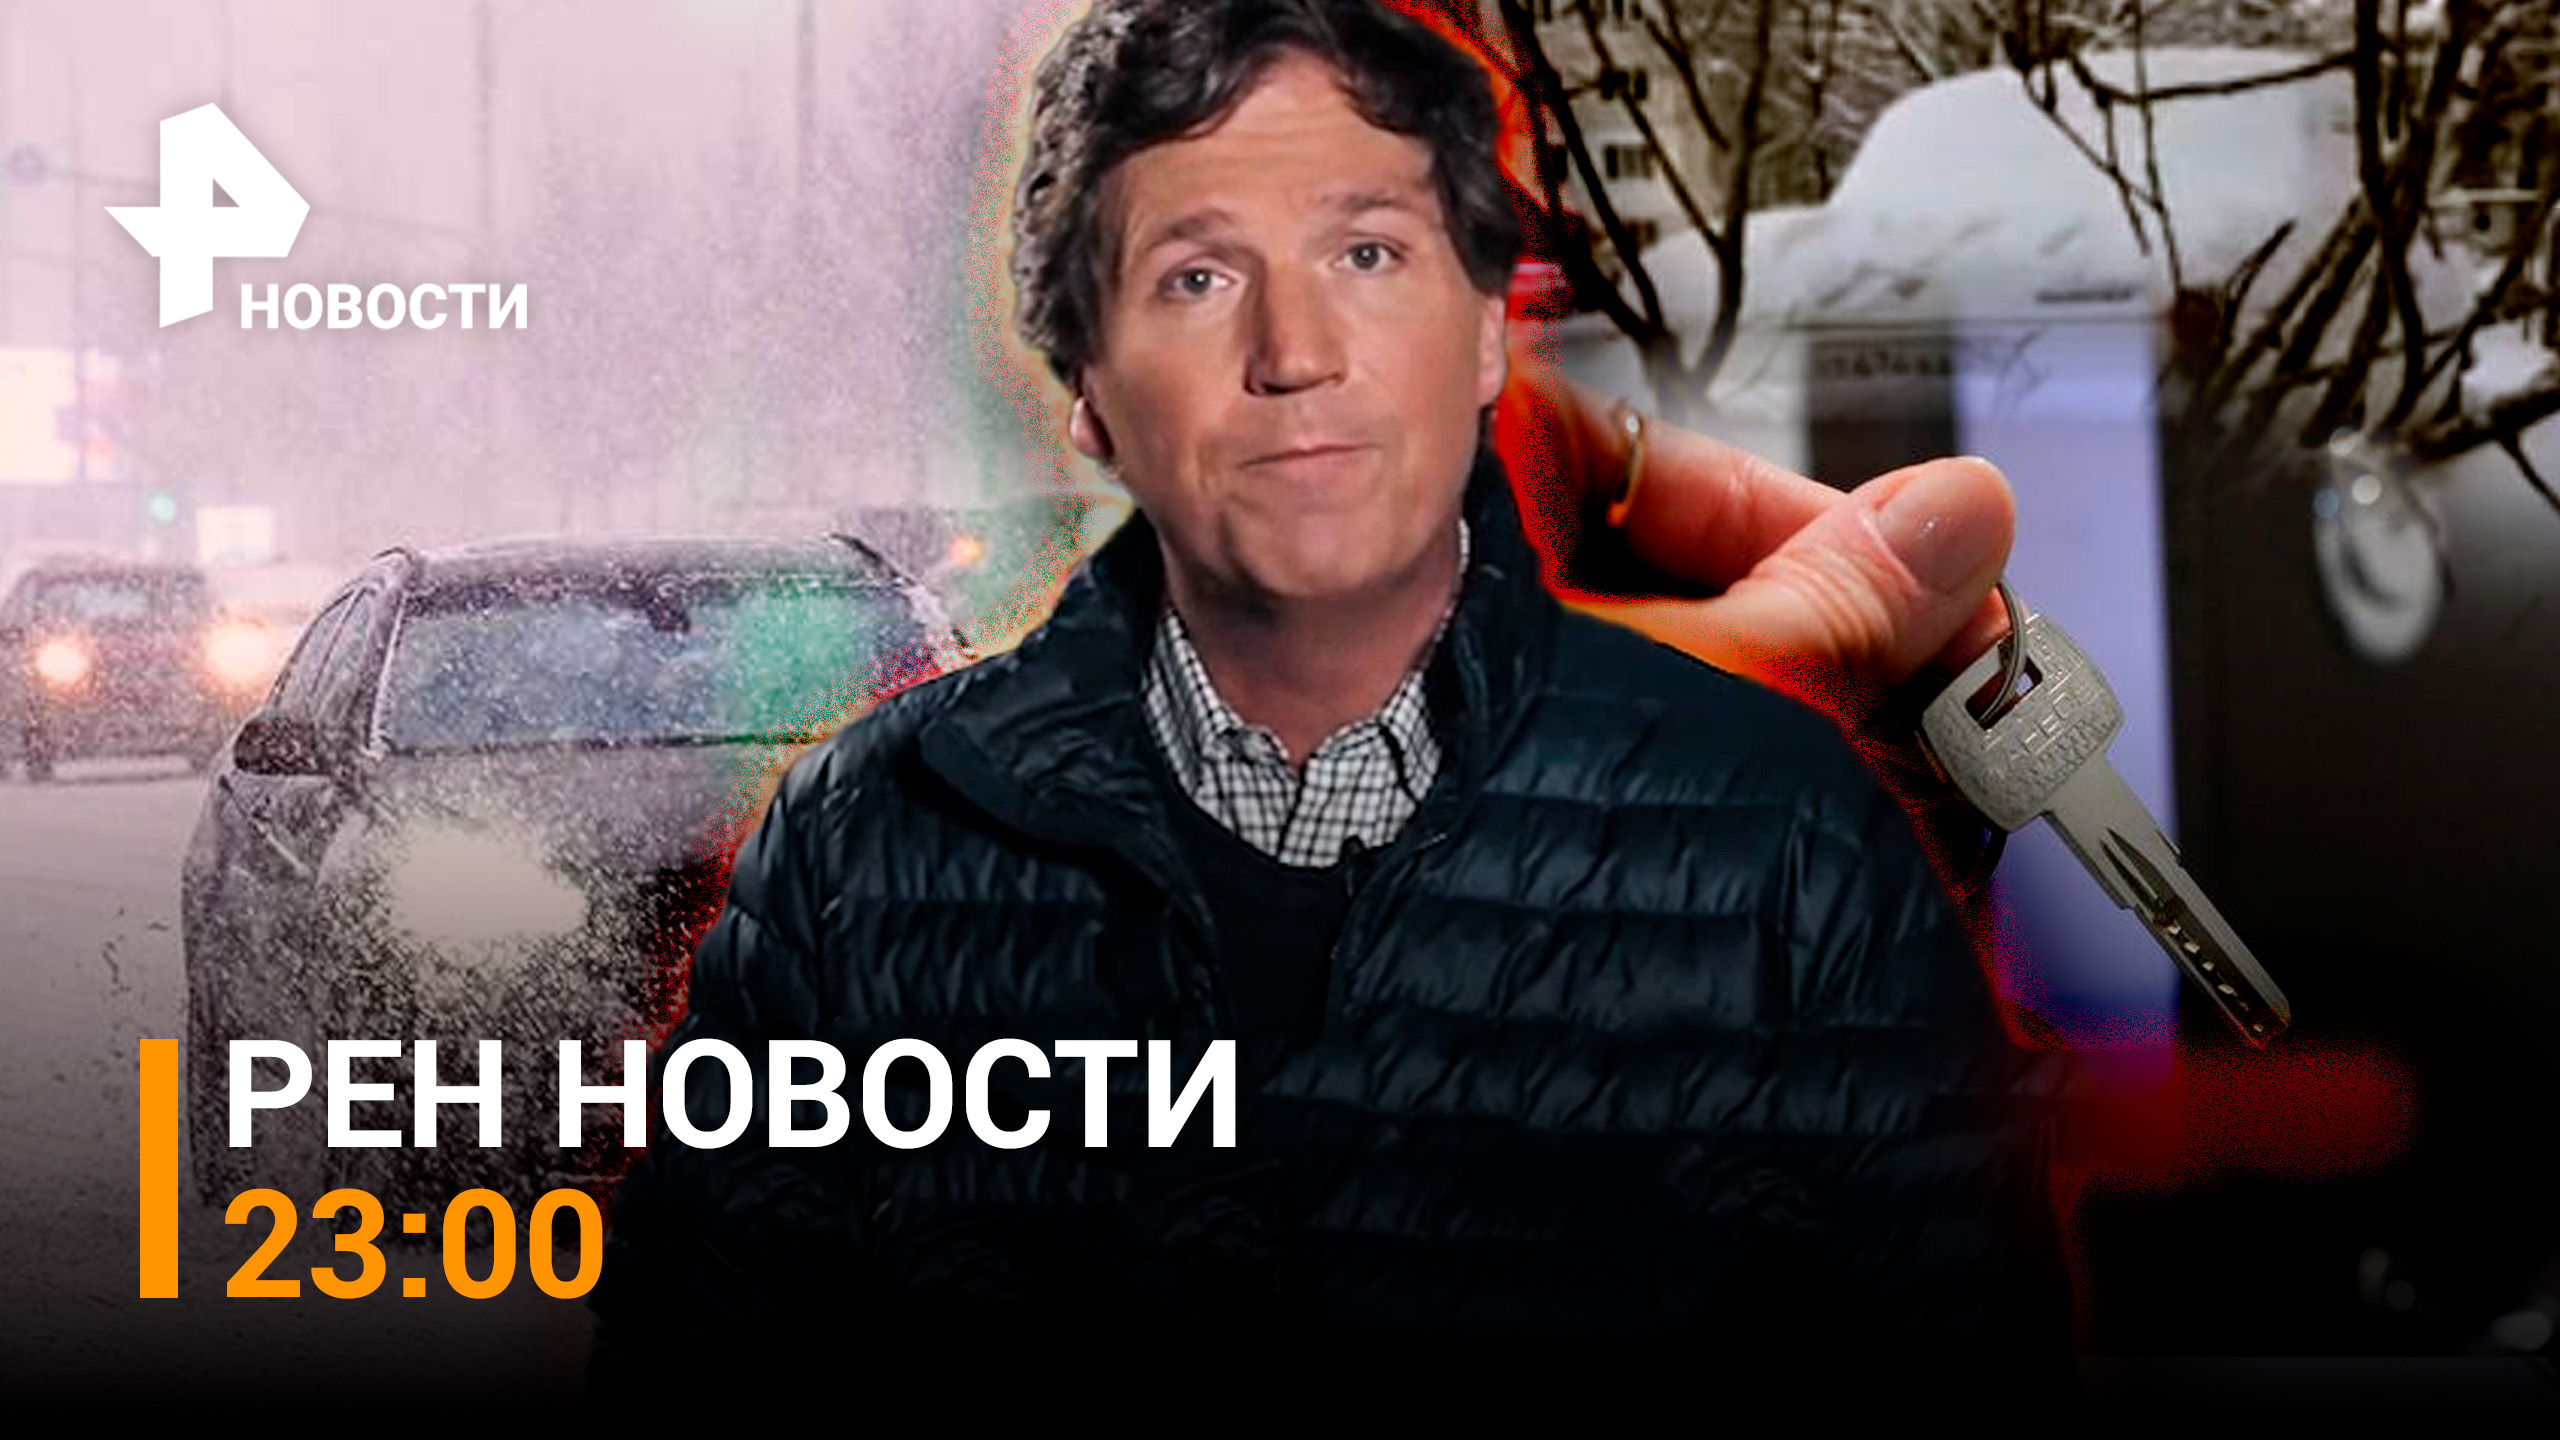 Карлсон  возьмет интервью у Путина. Мощный снегопад идёт на Москву / НОВОСТИ РЕН ТВ 23:00 — 06.02